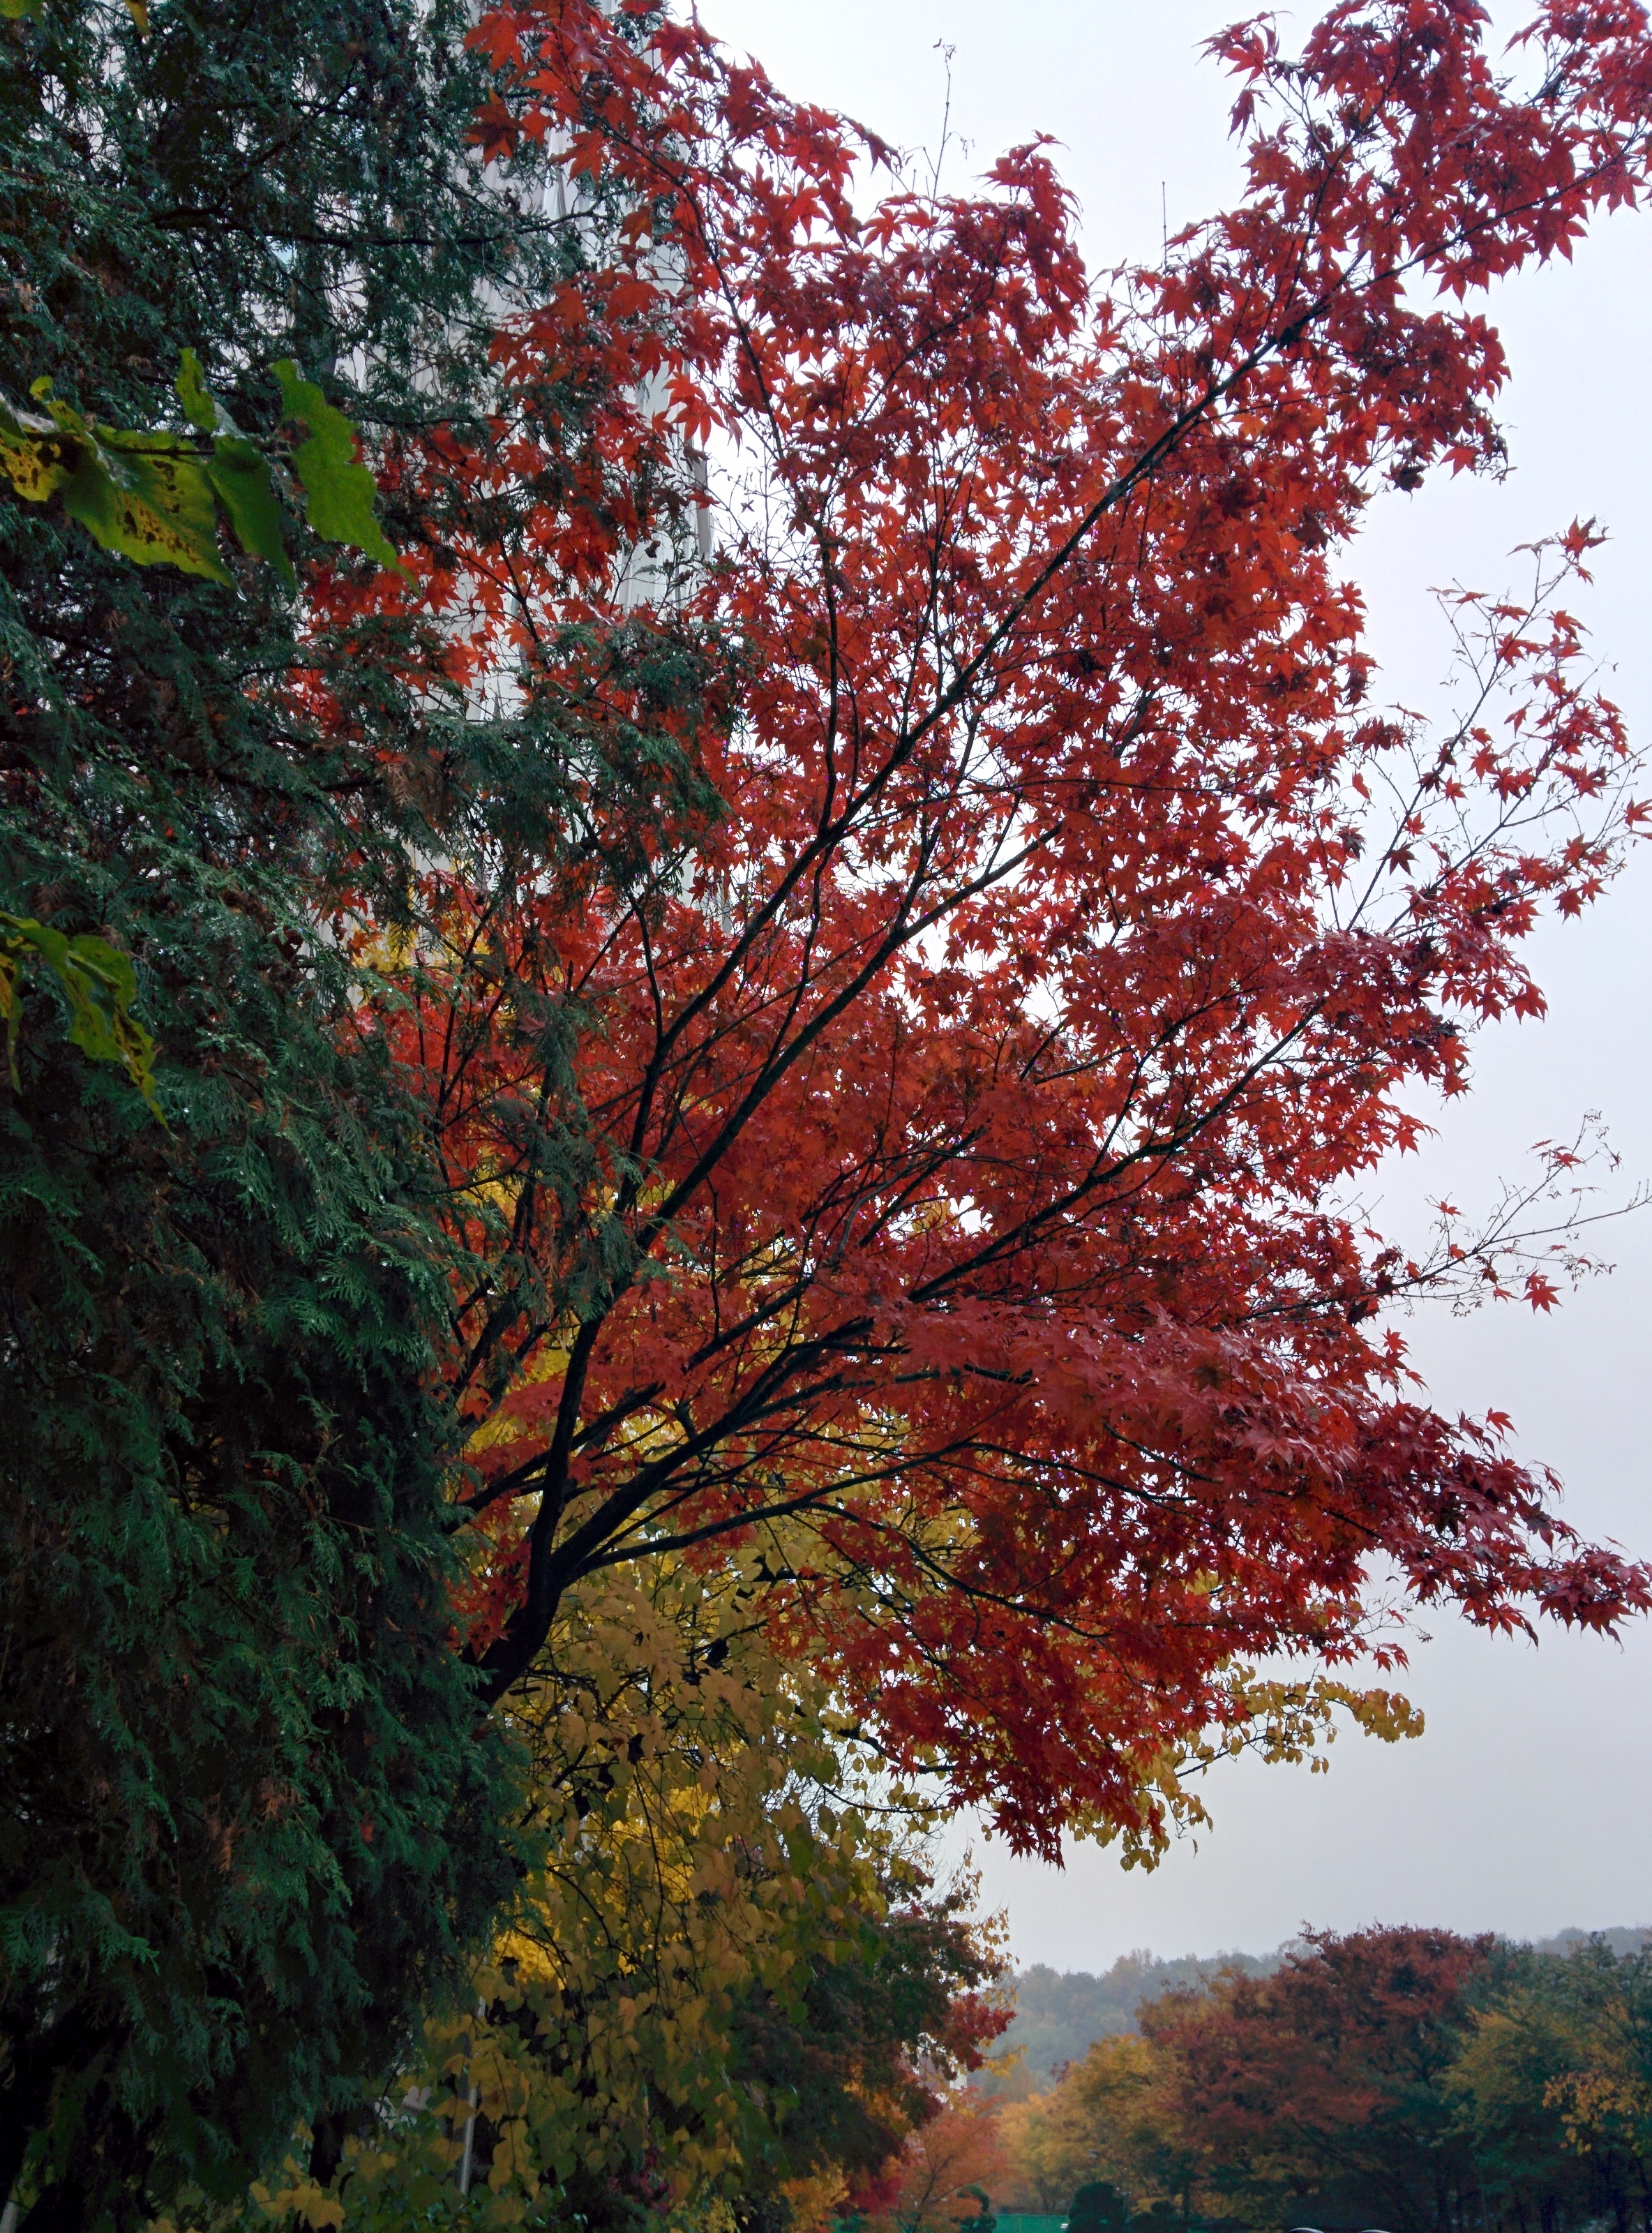 IMG_20151108_125921.jpg 비오는 날 단풍나무의 붉은색 . 단풍(丹楓)